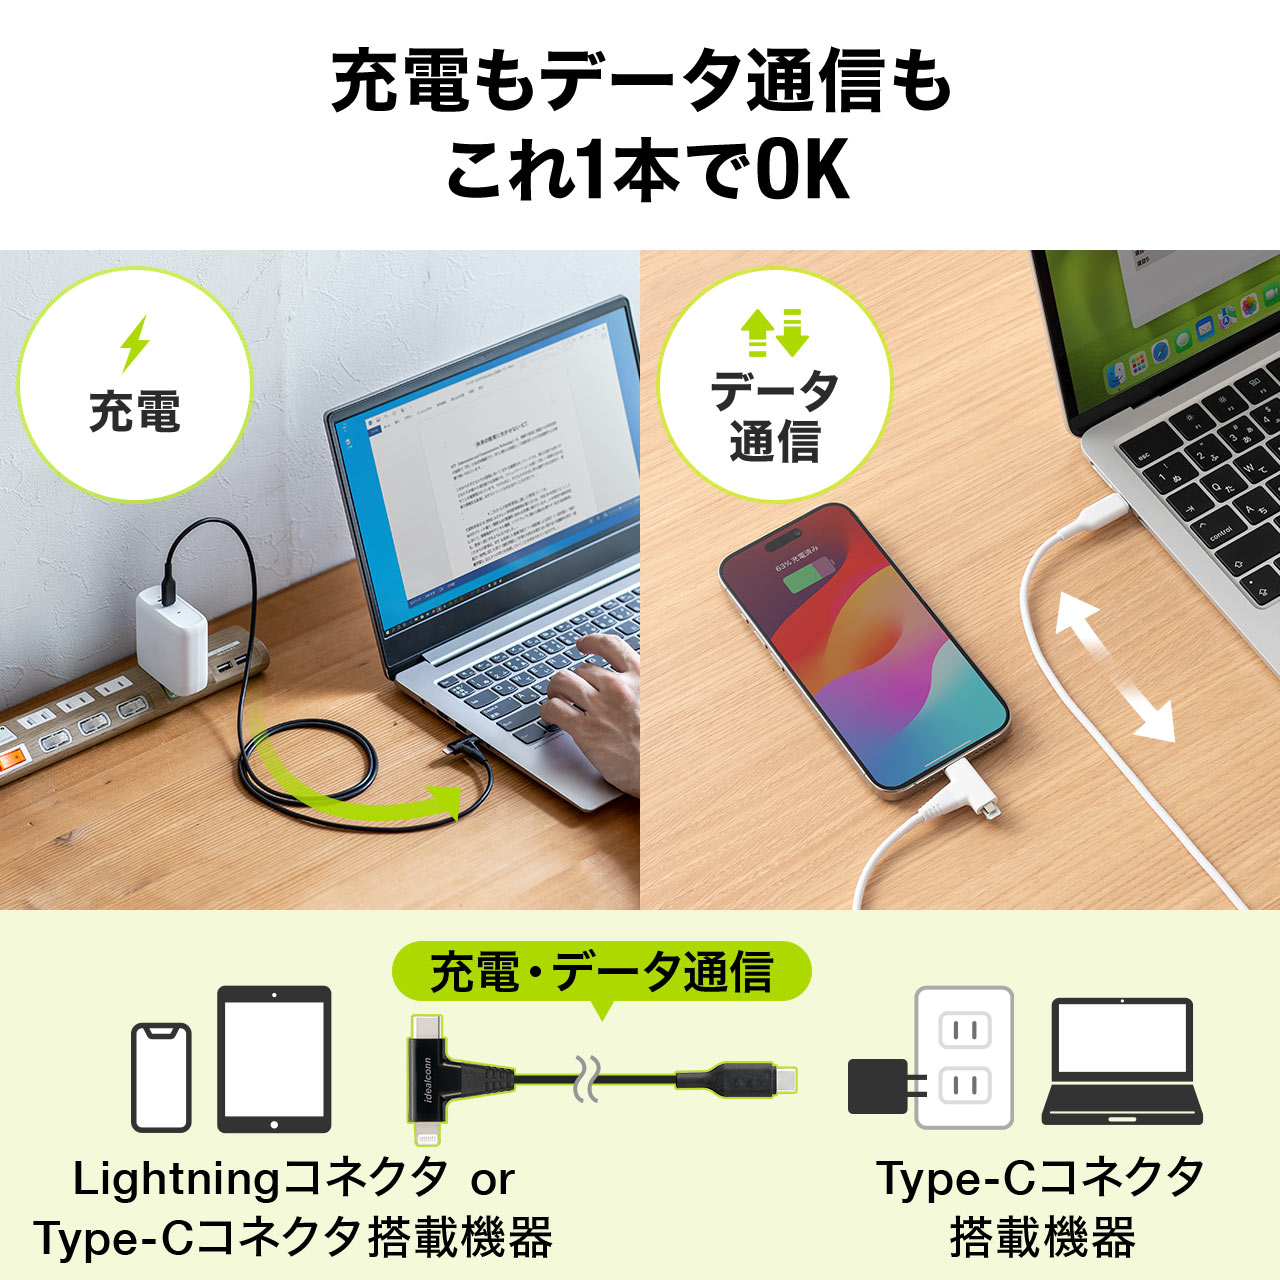 USB Type-C Lightning 2in1 USBP[u 1.2m USB PD60WΉ f[^] MFiFؕi iPadi10j iPhone15/14Ή zCg 500-IPLM033W